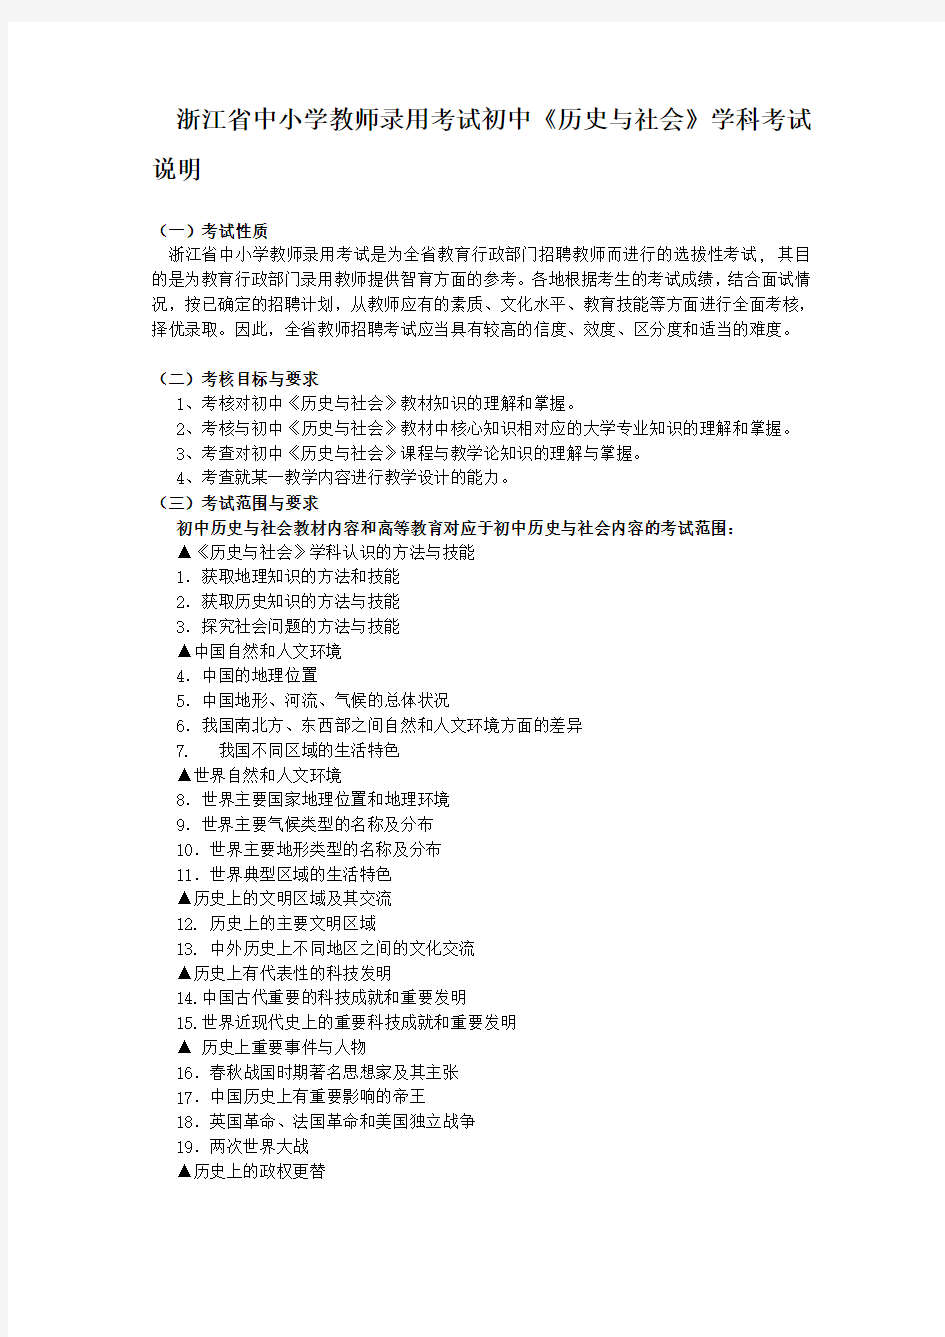 浙江省中小学教师录用考试初中《历史与社会》学科考试说明